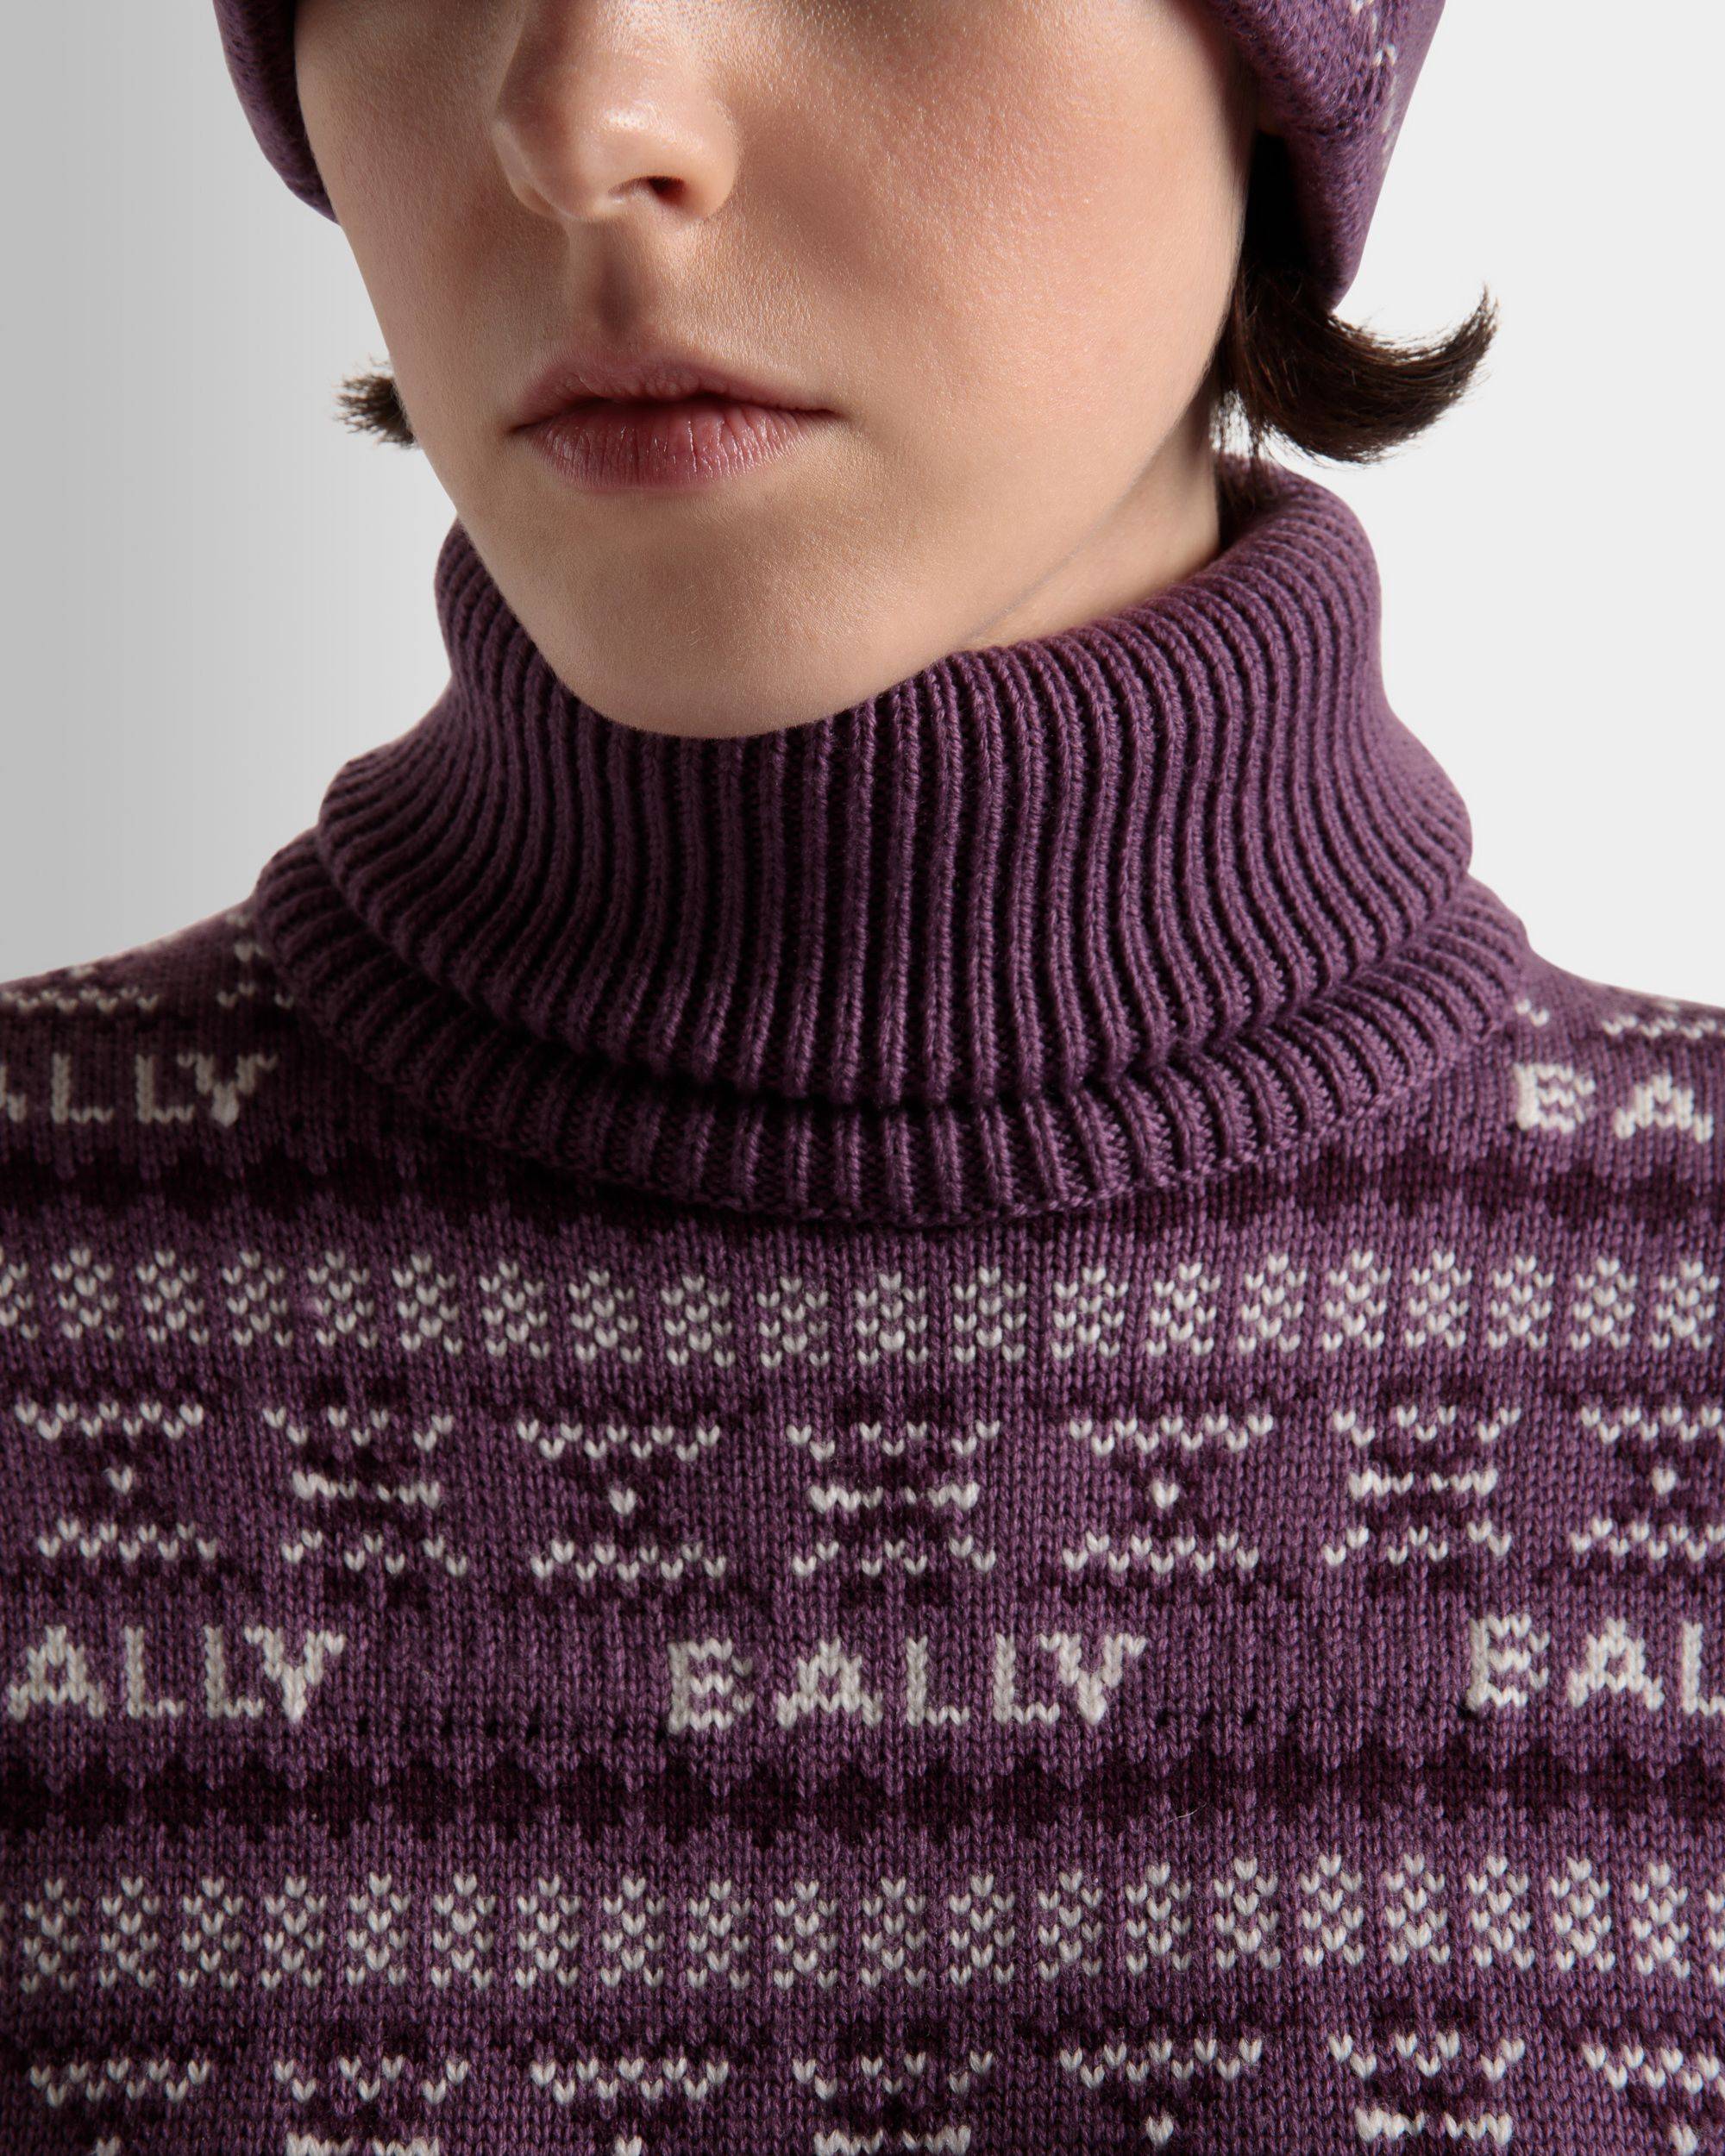 Damen-Rollkragenpullover aus lila Wolle | Bally | Model getragen Detail